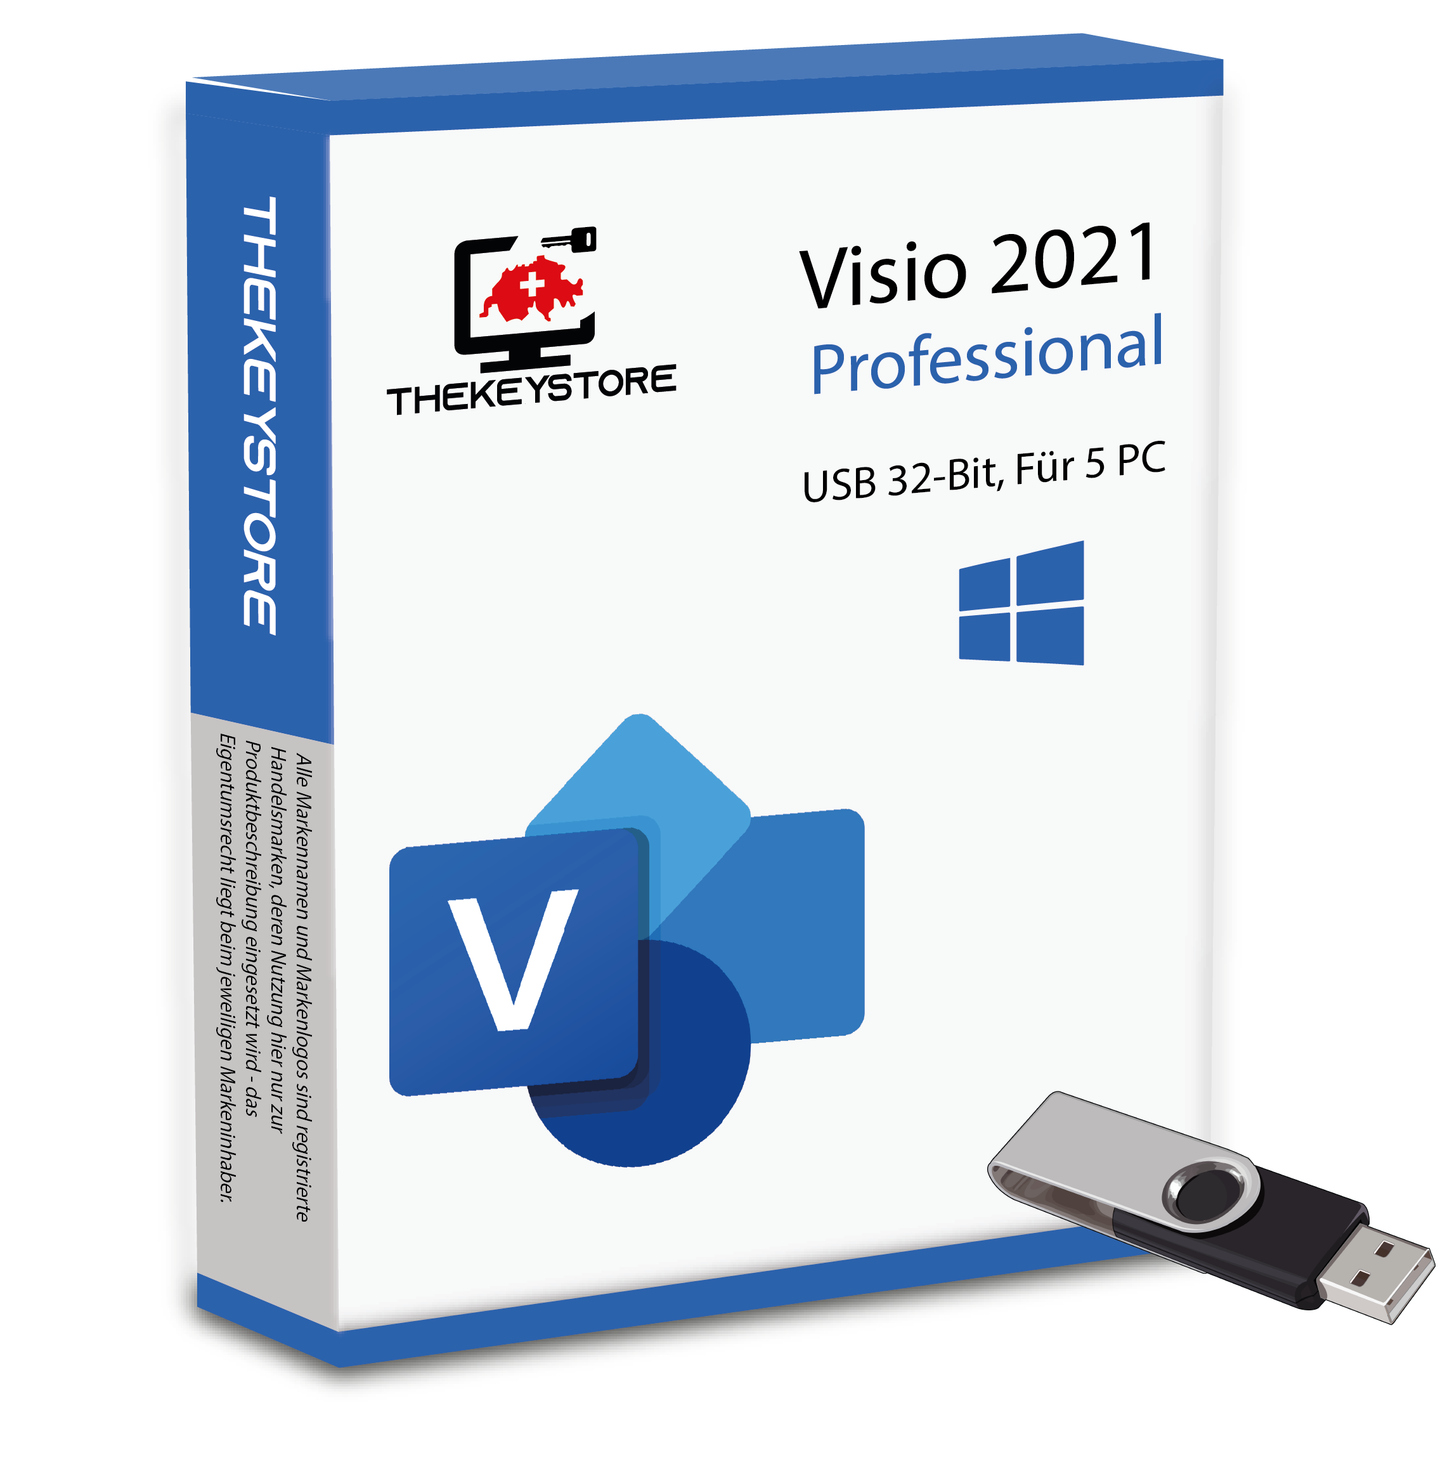 Microsoft Visio 2021 Professional - Für 5 PC - TheKeyStore Schweiz